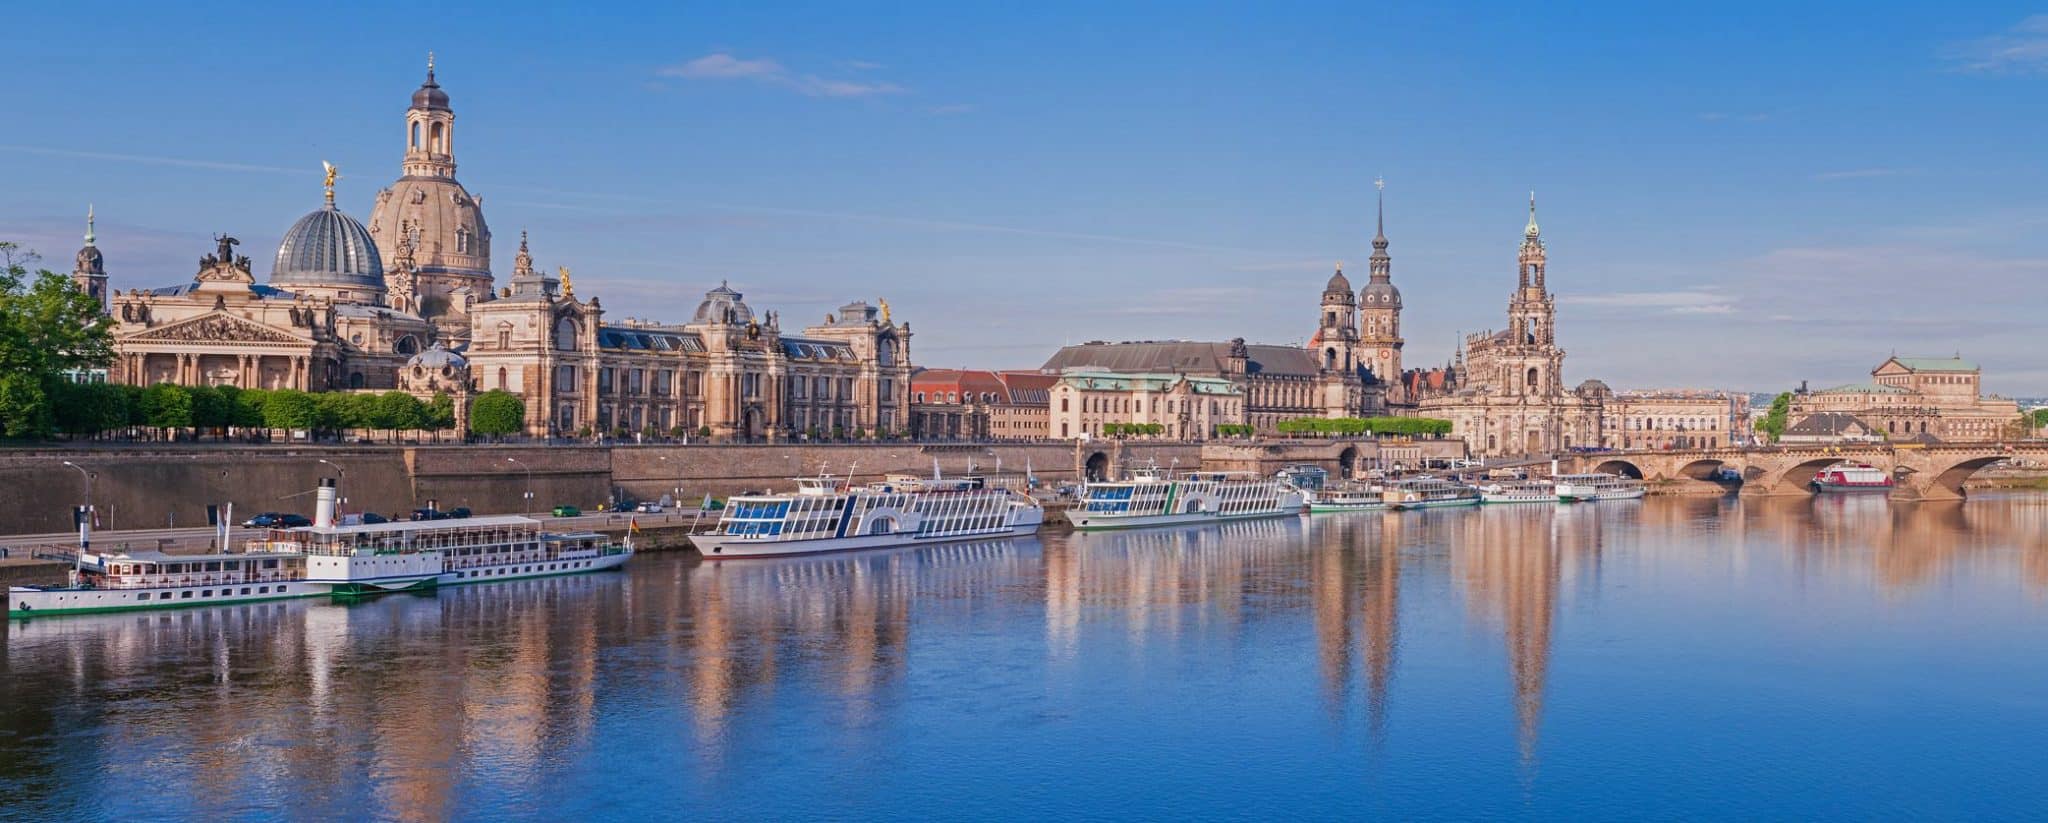 Dresden Alstadt von der Elbe aus